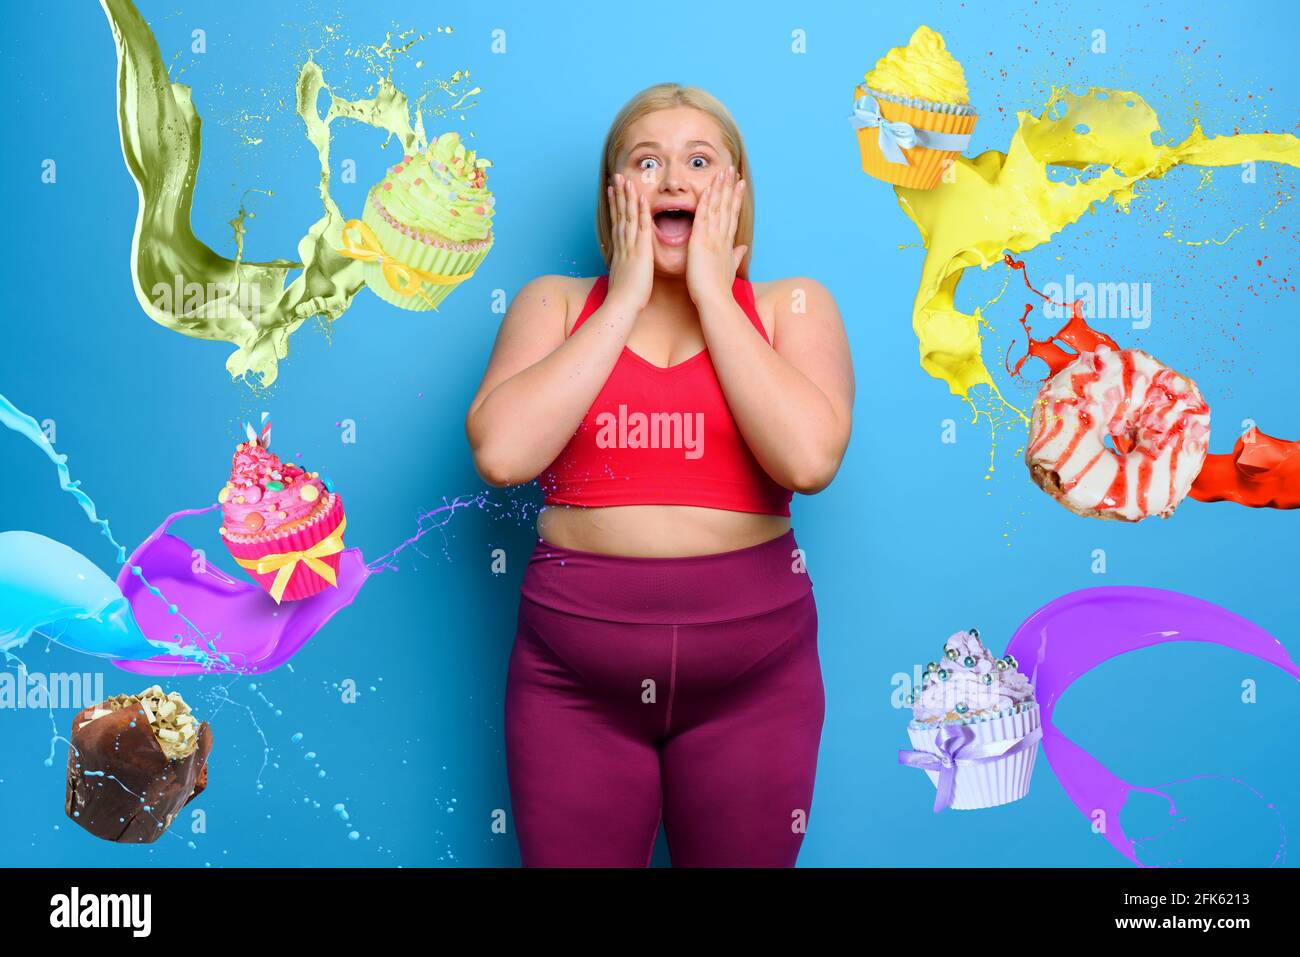 Femme grasse avec une expression choquée et surprise parce qu'elle est entourée de bonbons. Fond cyan Banque D'Images